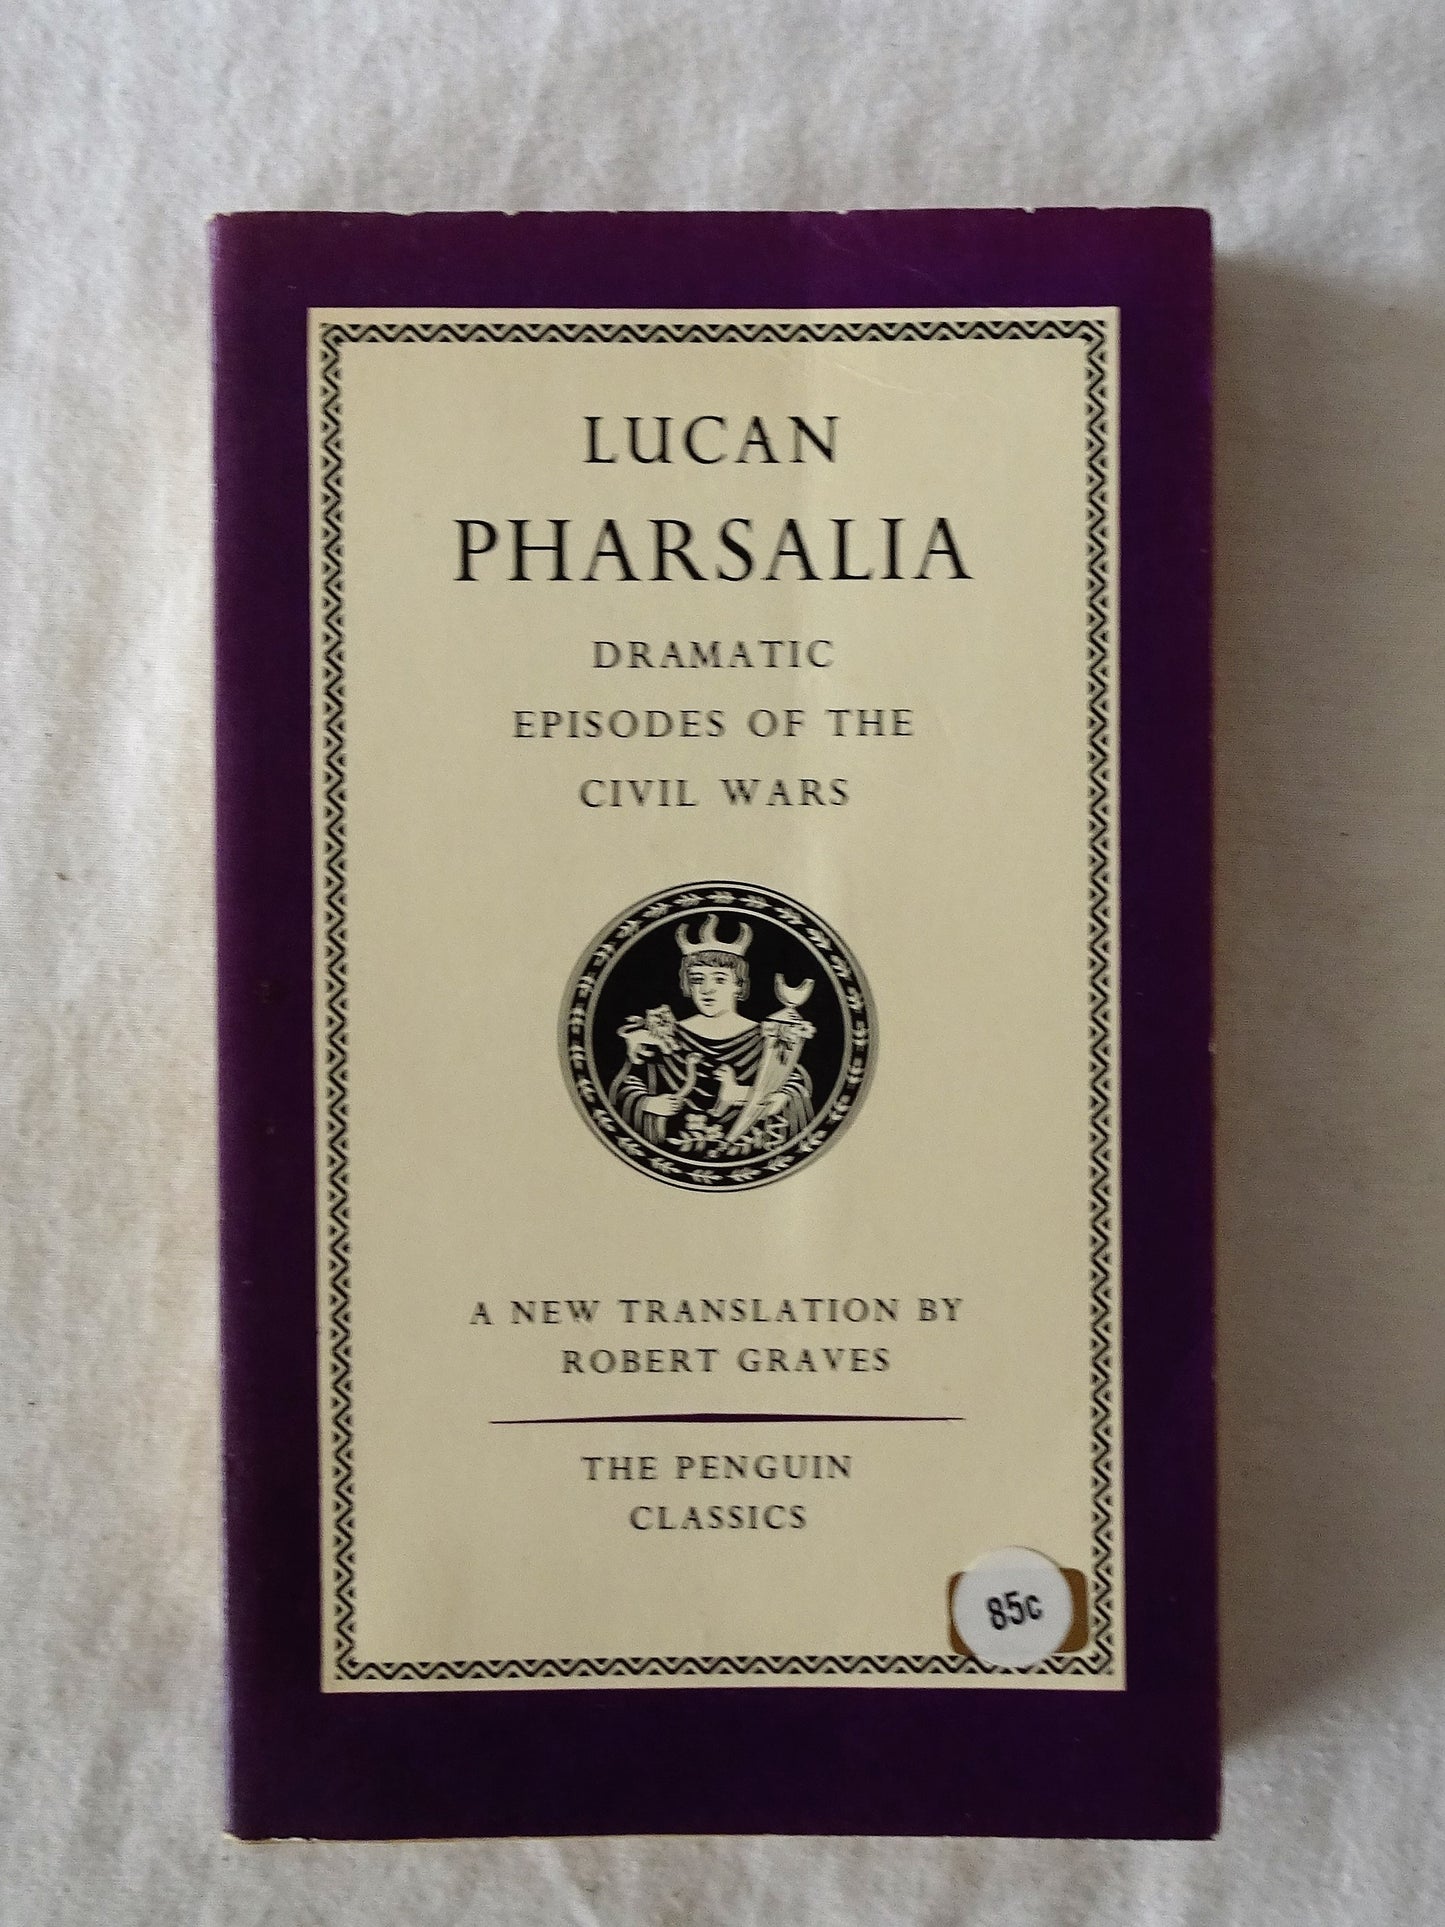 Lucan Pharsalia translated by Robert Graves